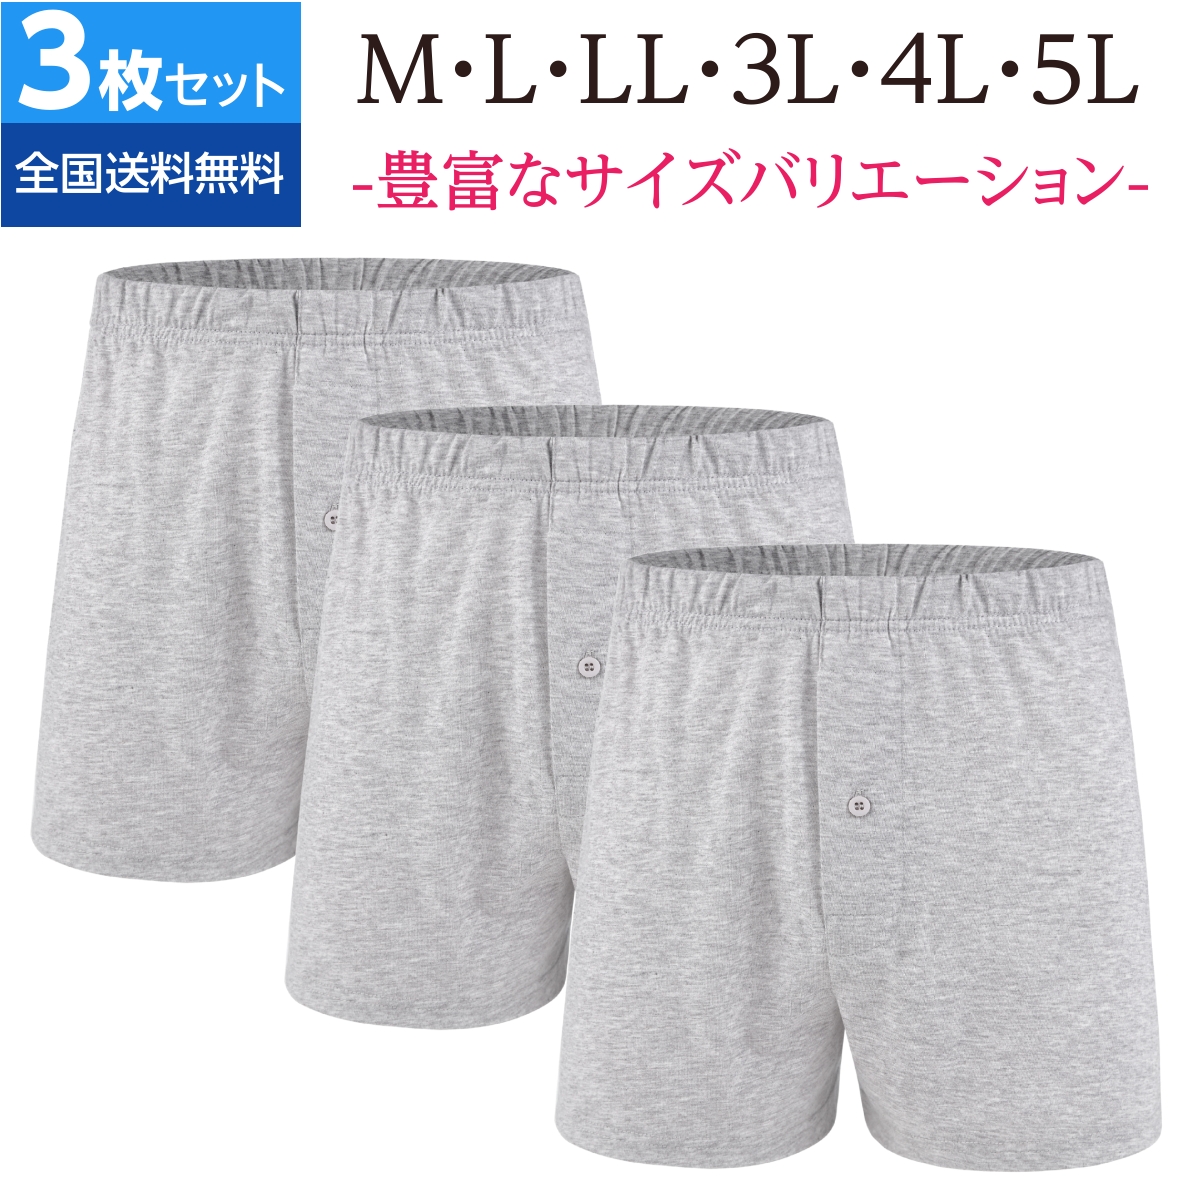 【公式ストア】mom21 トランクス  メンズ 下着 ニット パンツ 大きいサイズ 3枚セット 無地...